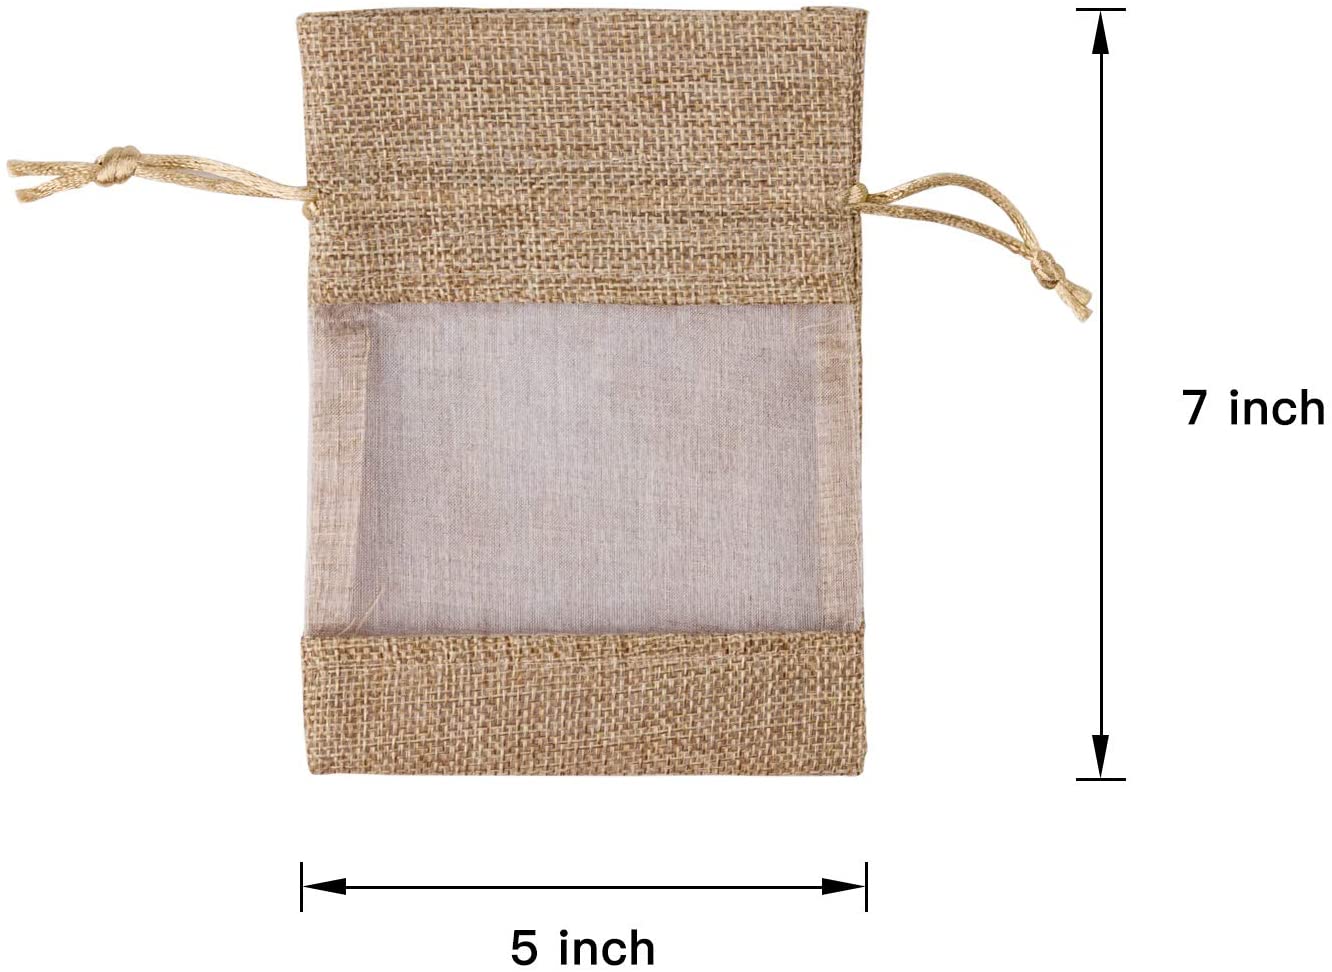 Burlap Drawstring Gift Bag - 4 x 5.5 inch/ 5 x 7 inch - Tan